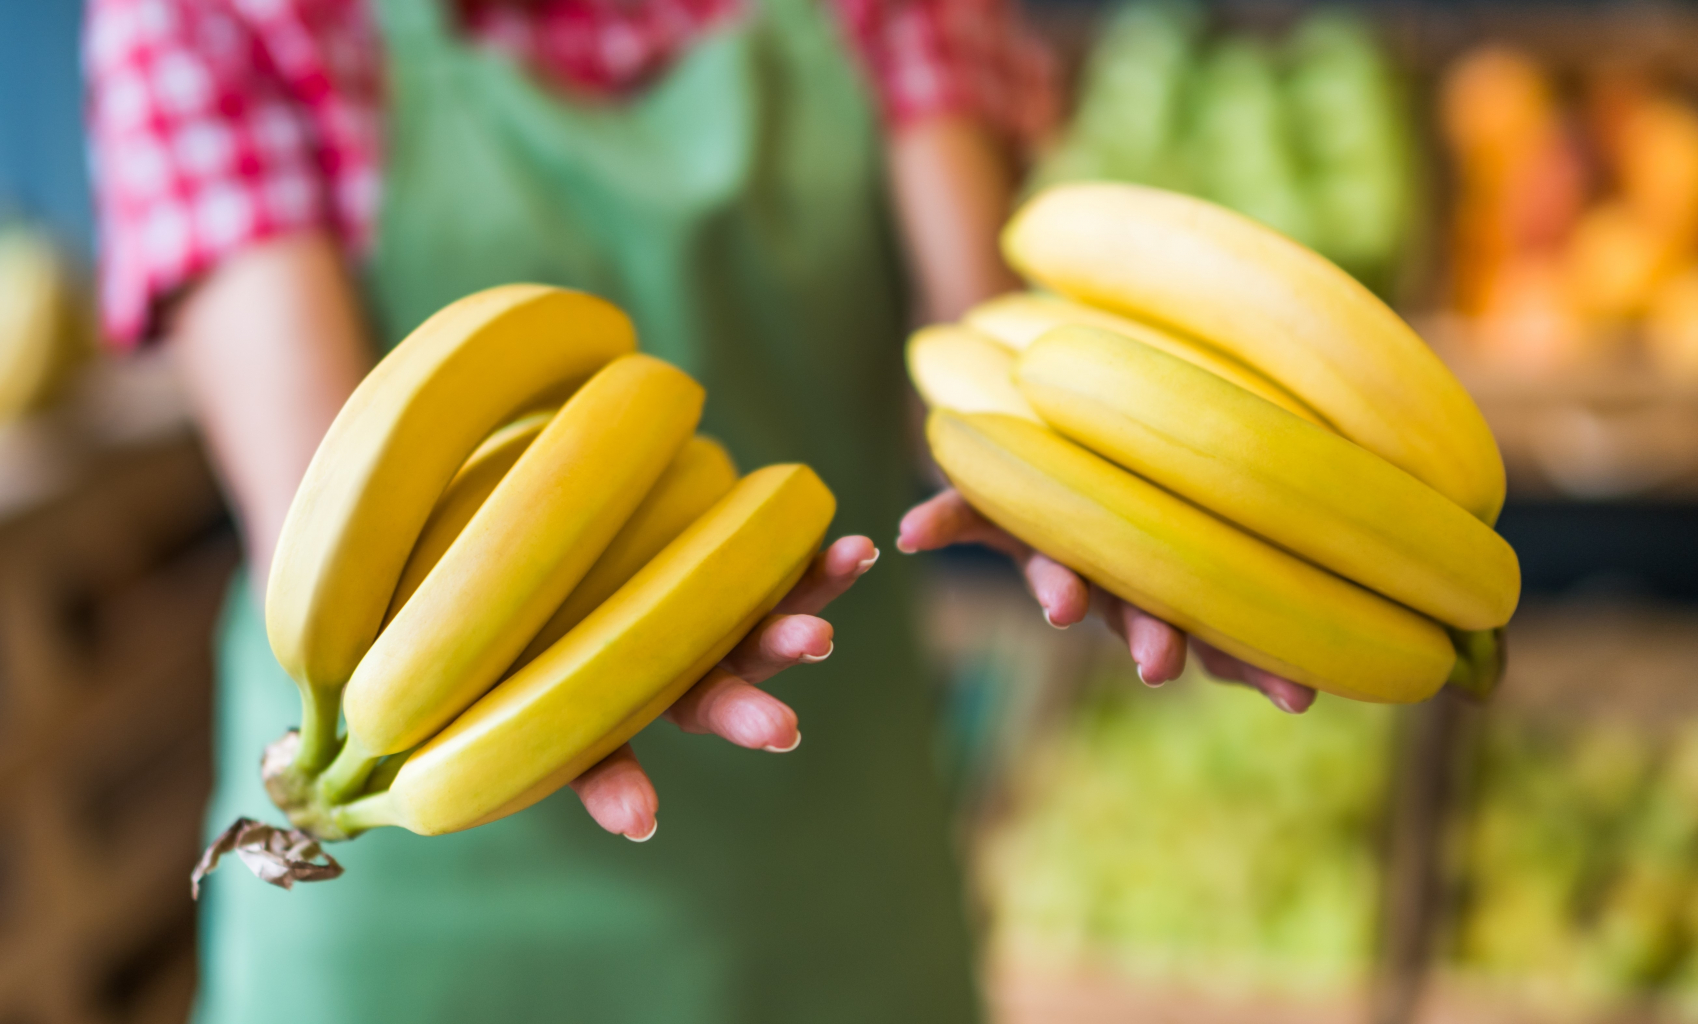 Banany - skarbnica witamin i minerałów. Nie wszyscy jednak mogą je jeść. Kto w szczególności?